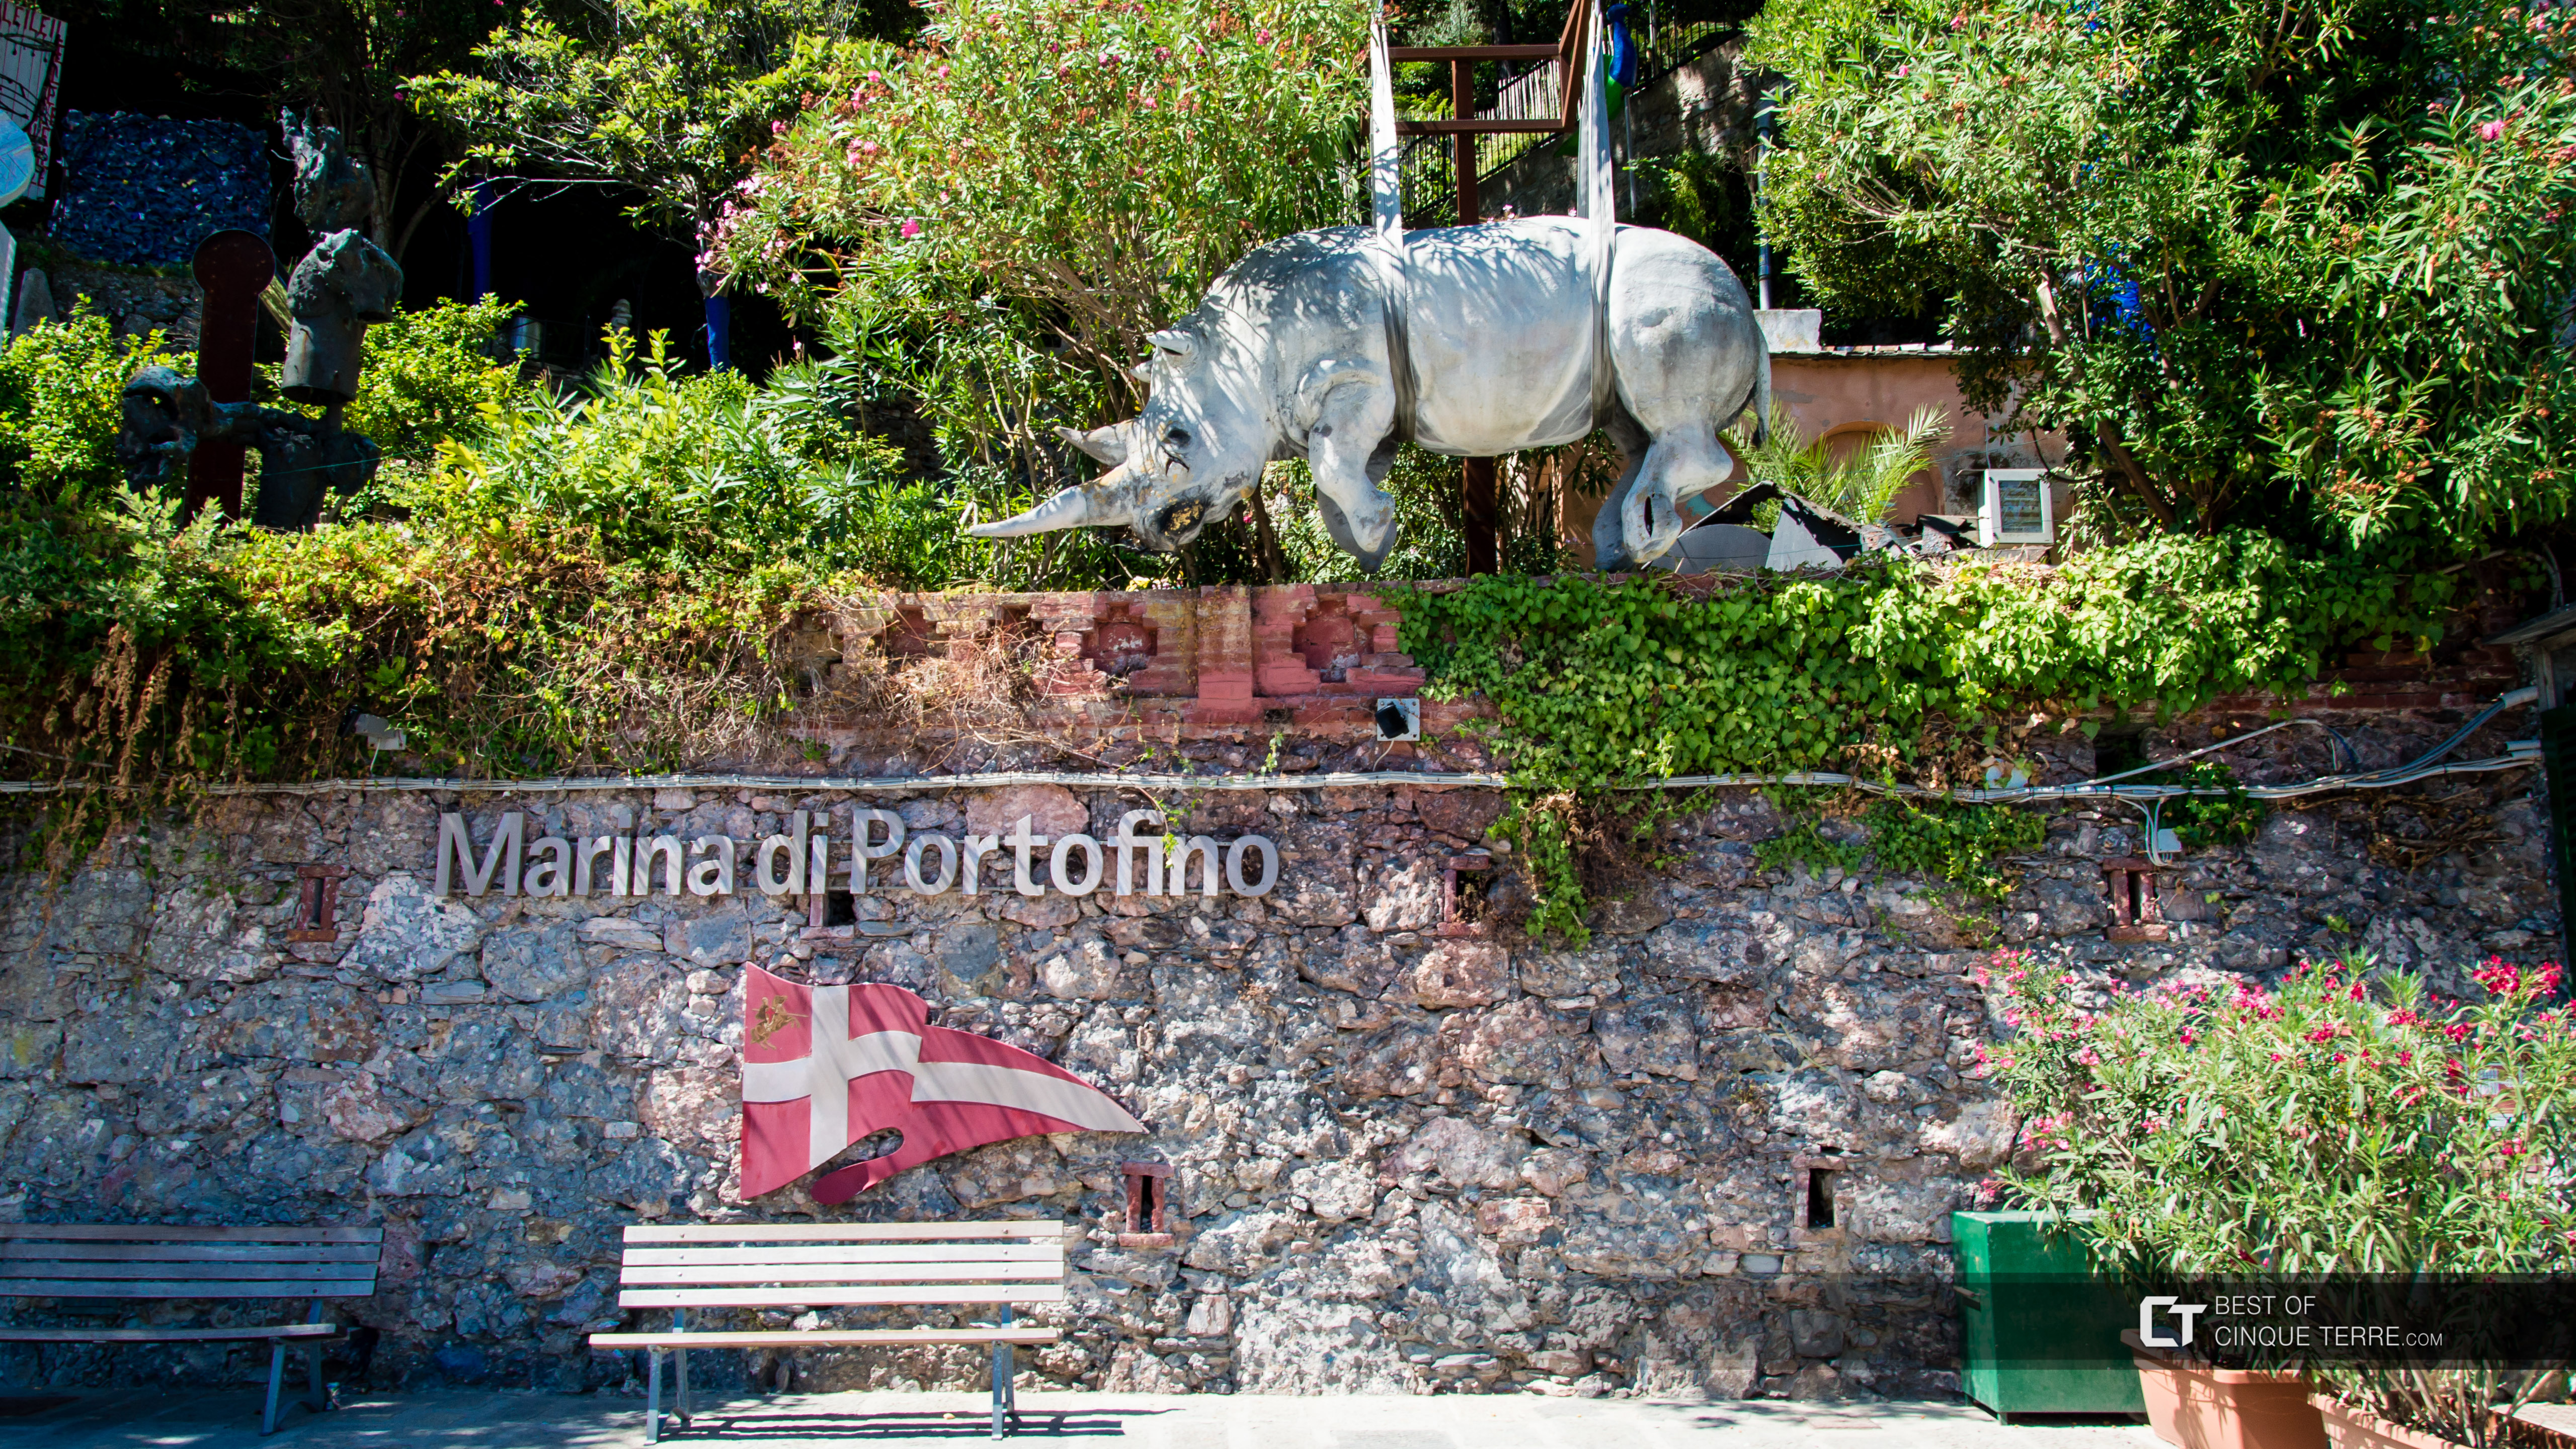 Estatua de rinoceronte, símbolo del pueblo, Portofino, Italia